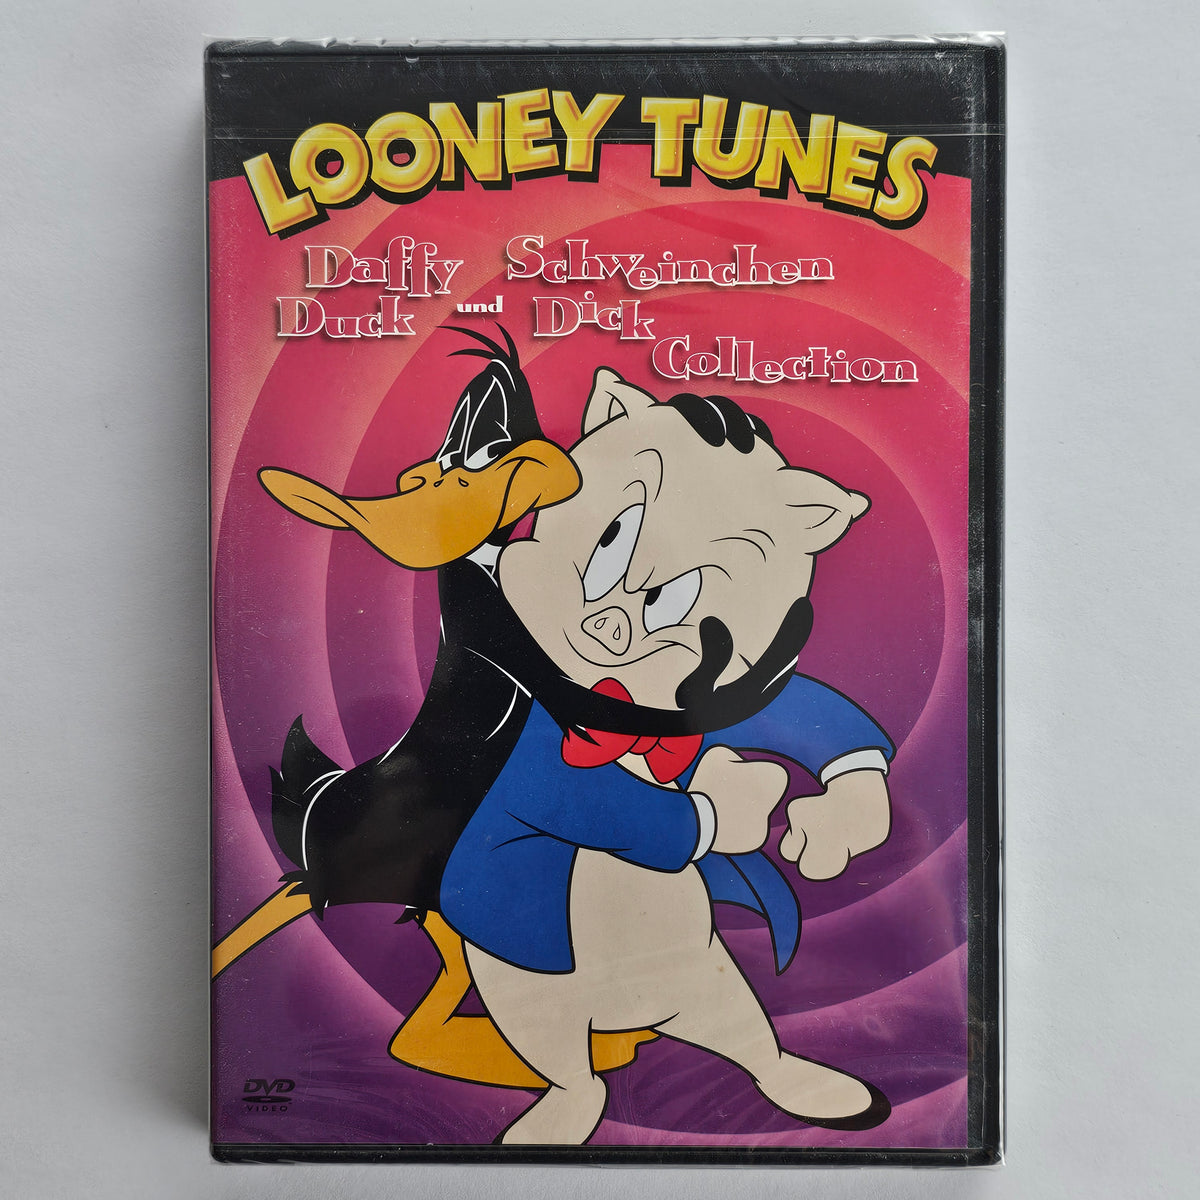 Daffy Duck und Schweinchen Dick [DVD]